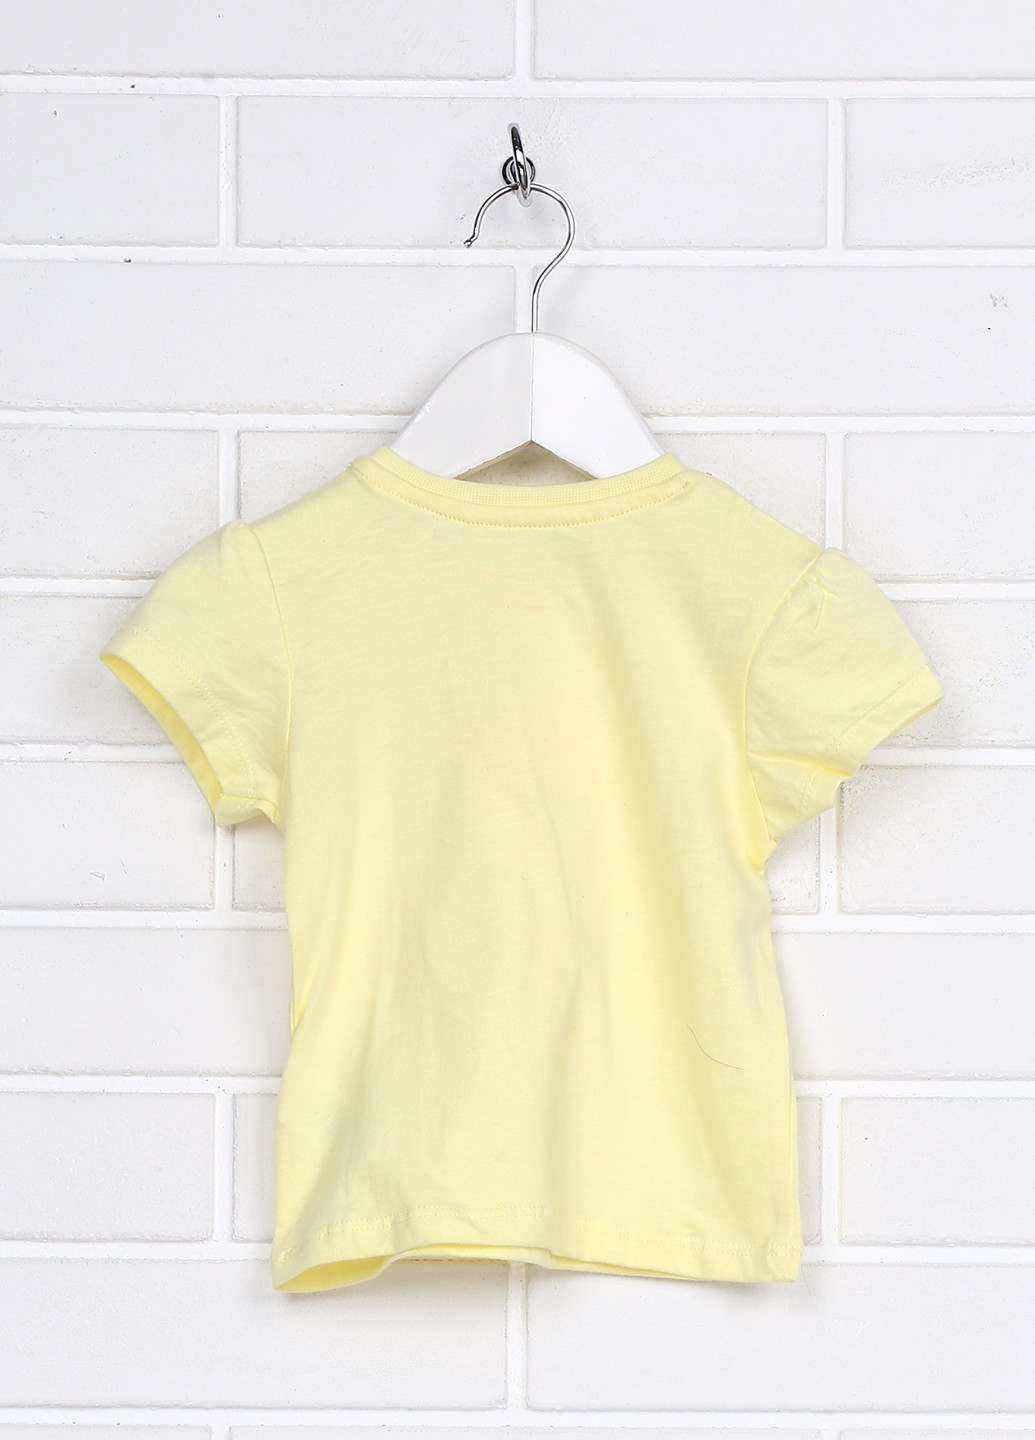 Жовта літня футболка з коротким рукавом Primark